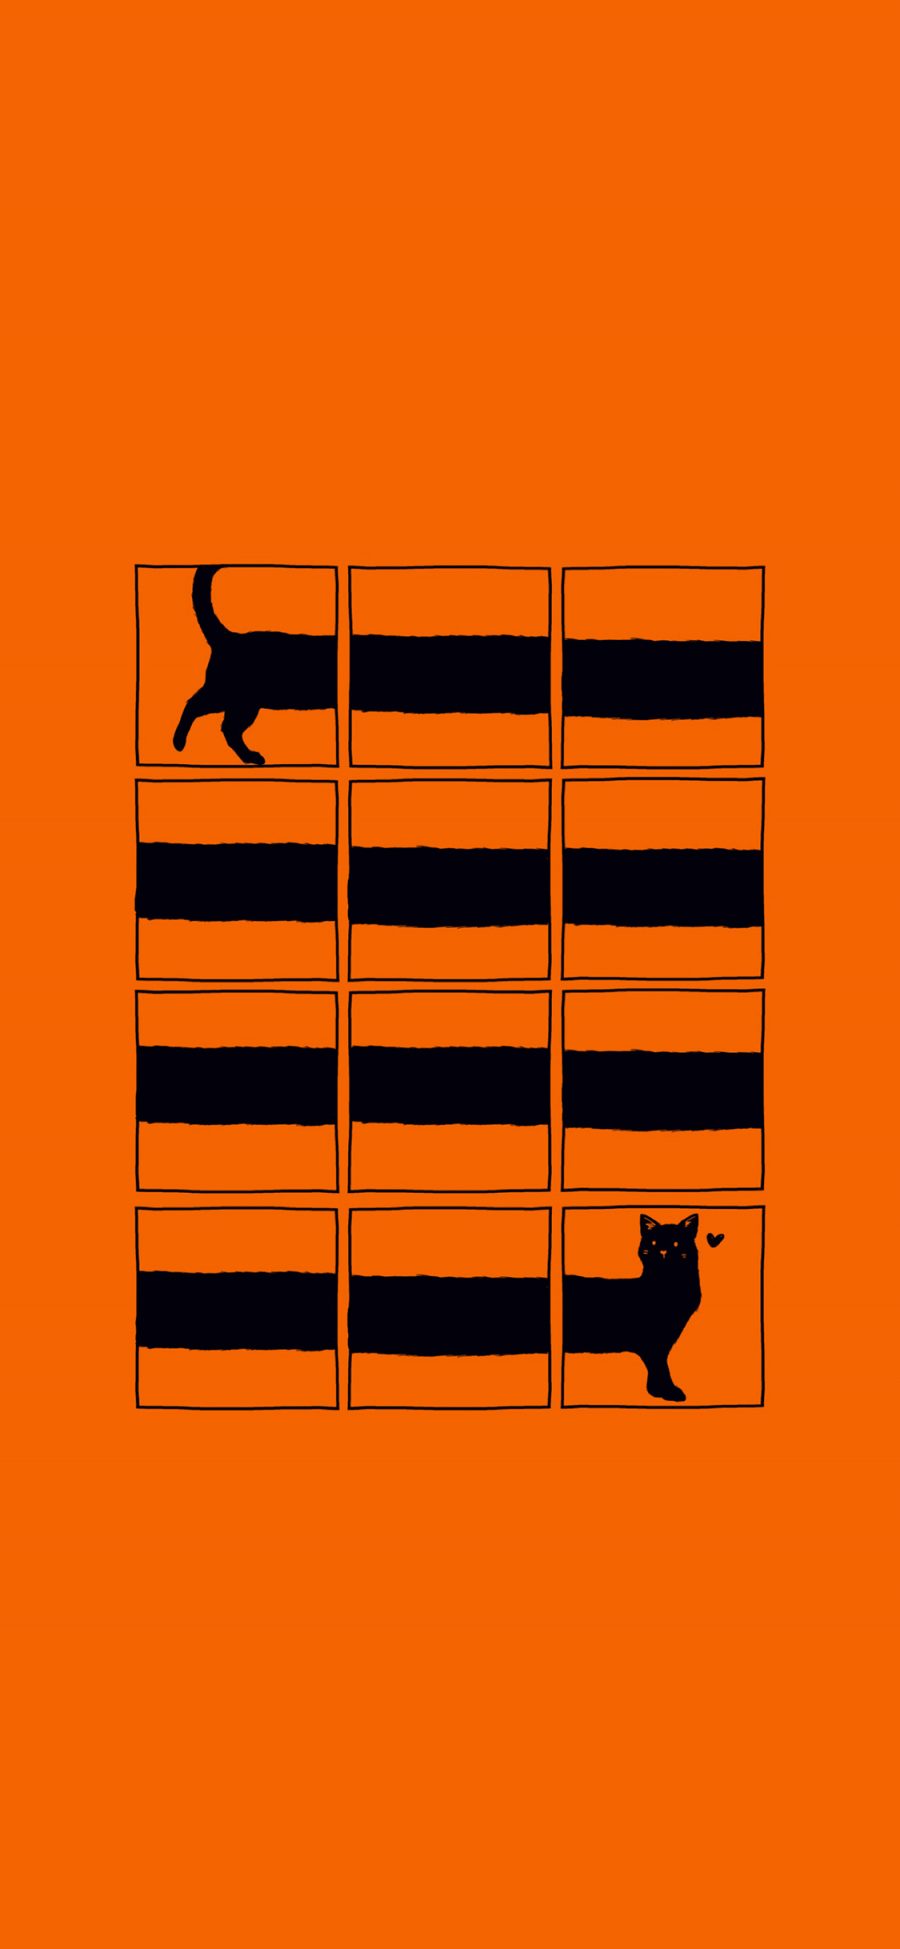 [2436×1125]橙色背景 插图 猫咪 创意 苹果手机动漫壁纸图片